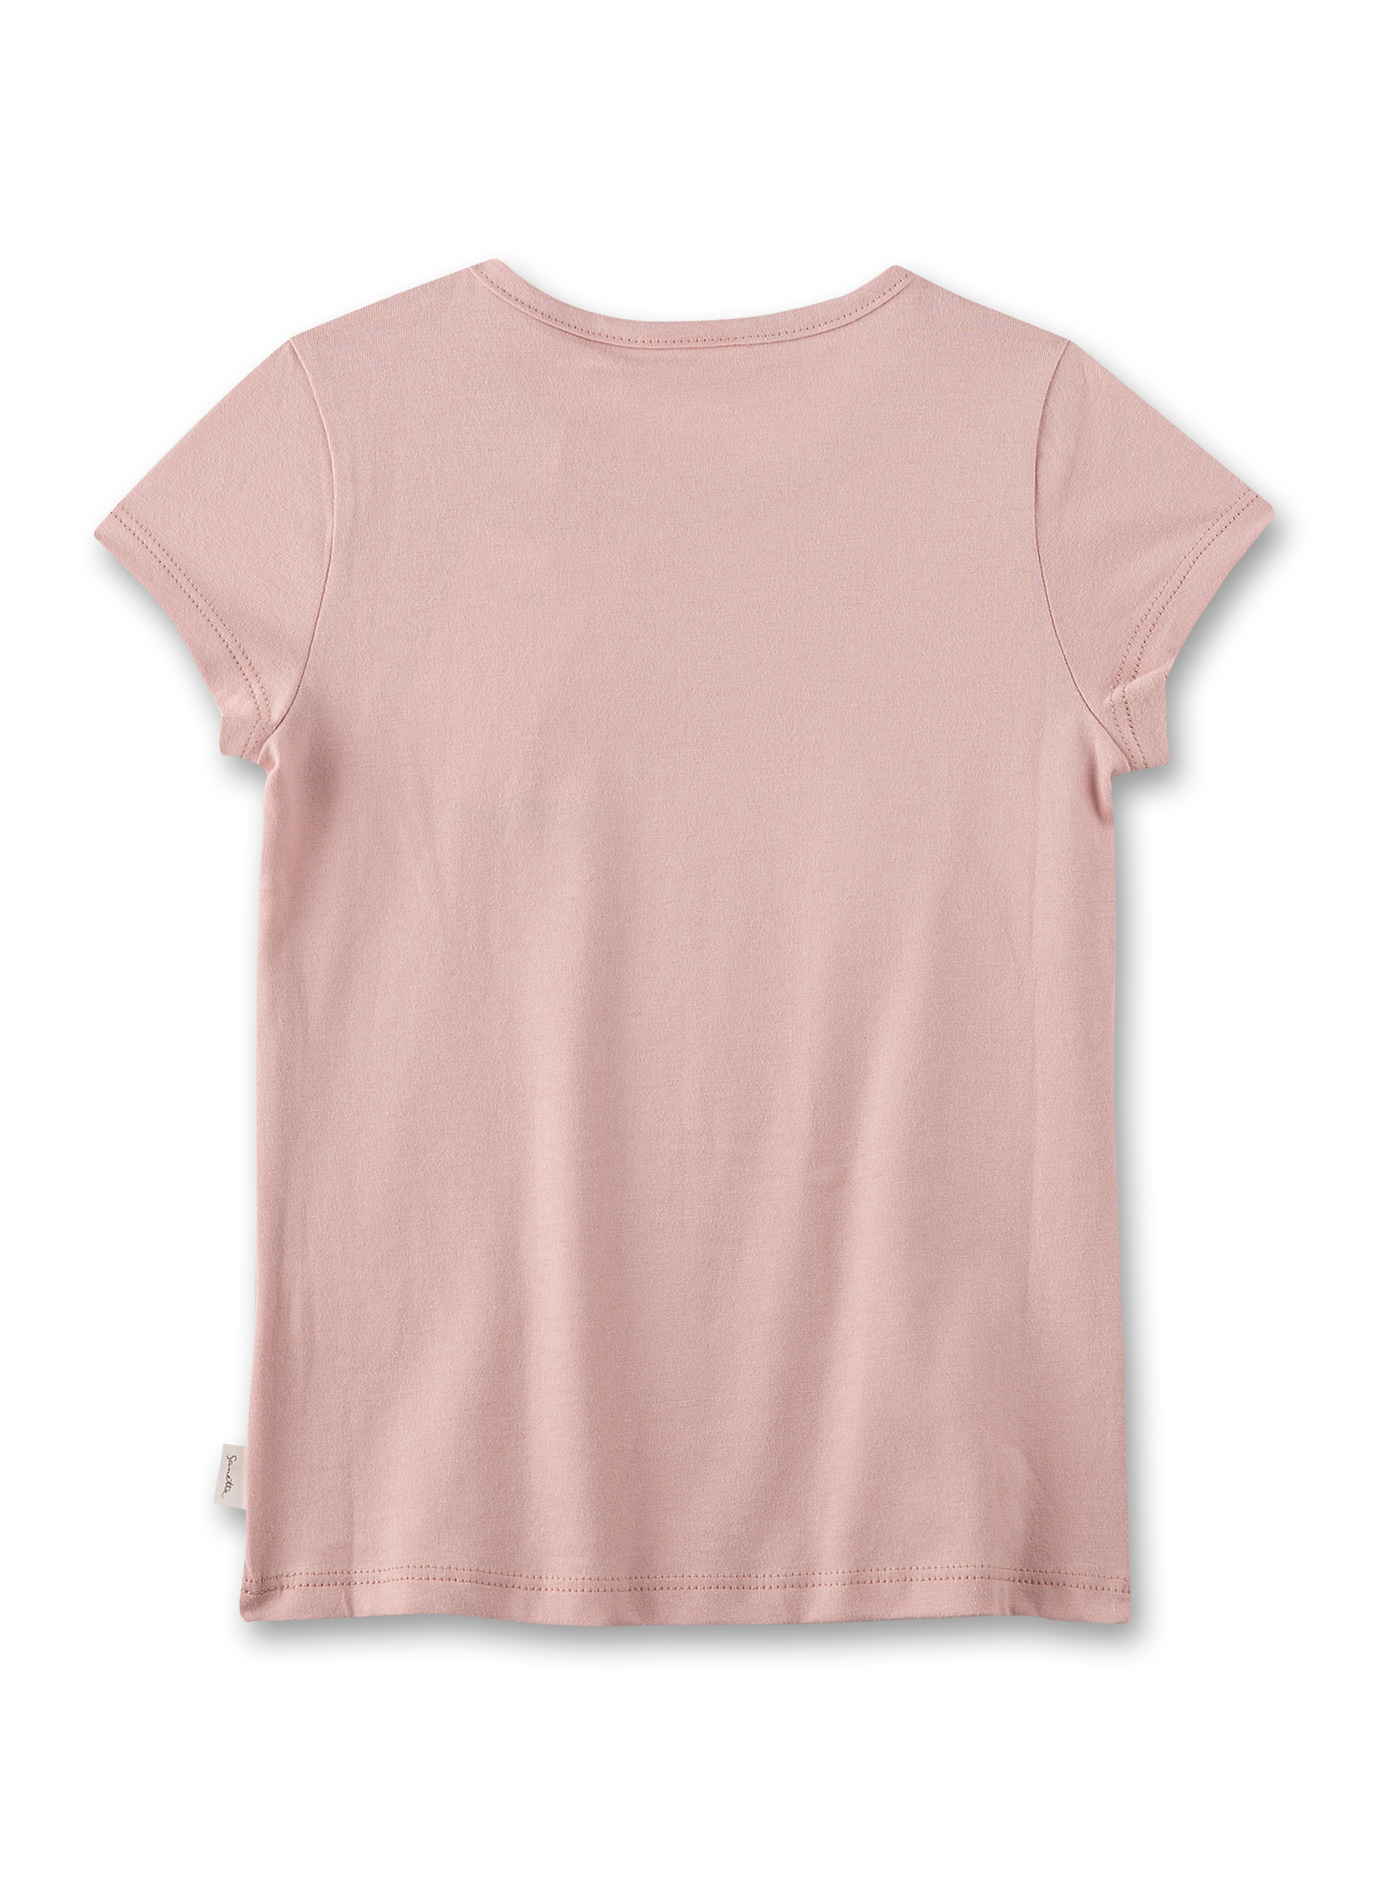 Mädchen T-Shirt Rosa